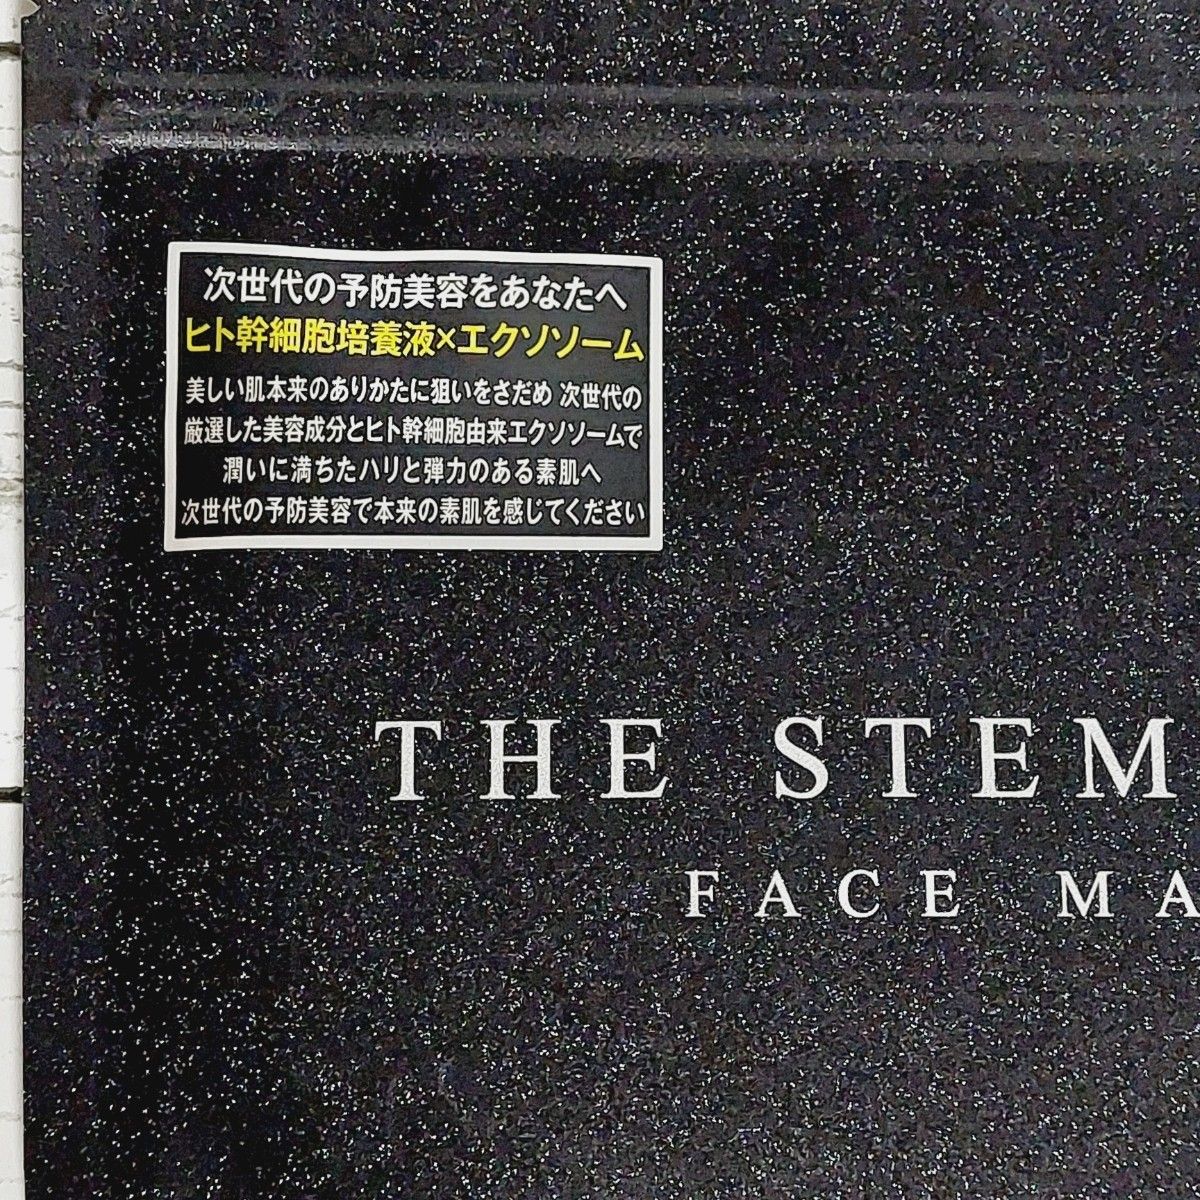 THE STEM CELL　ヒト幹細胞 ホワイト フェイスマスク 30枚